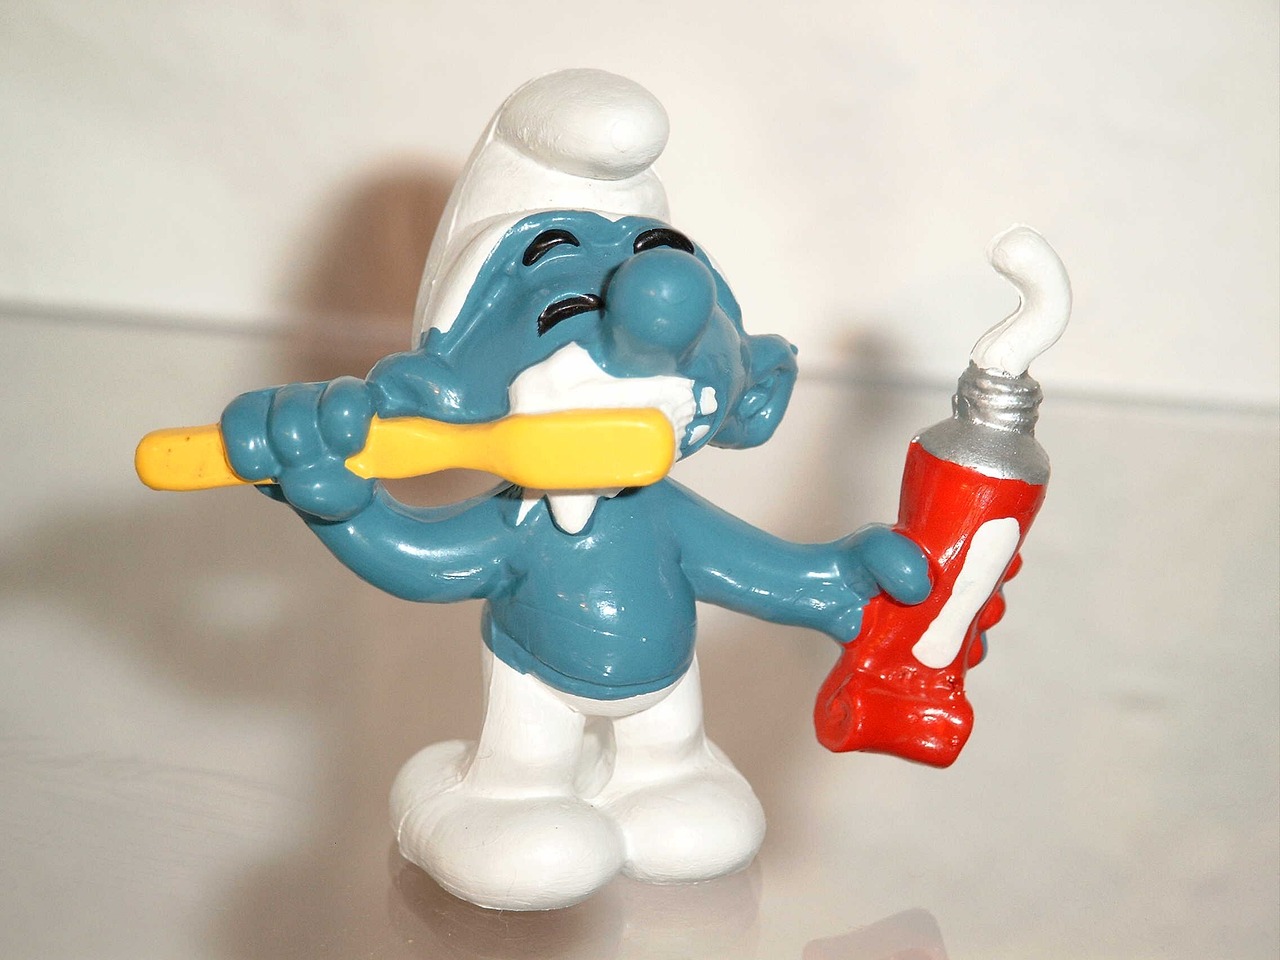 Smurf brushing teeth